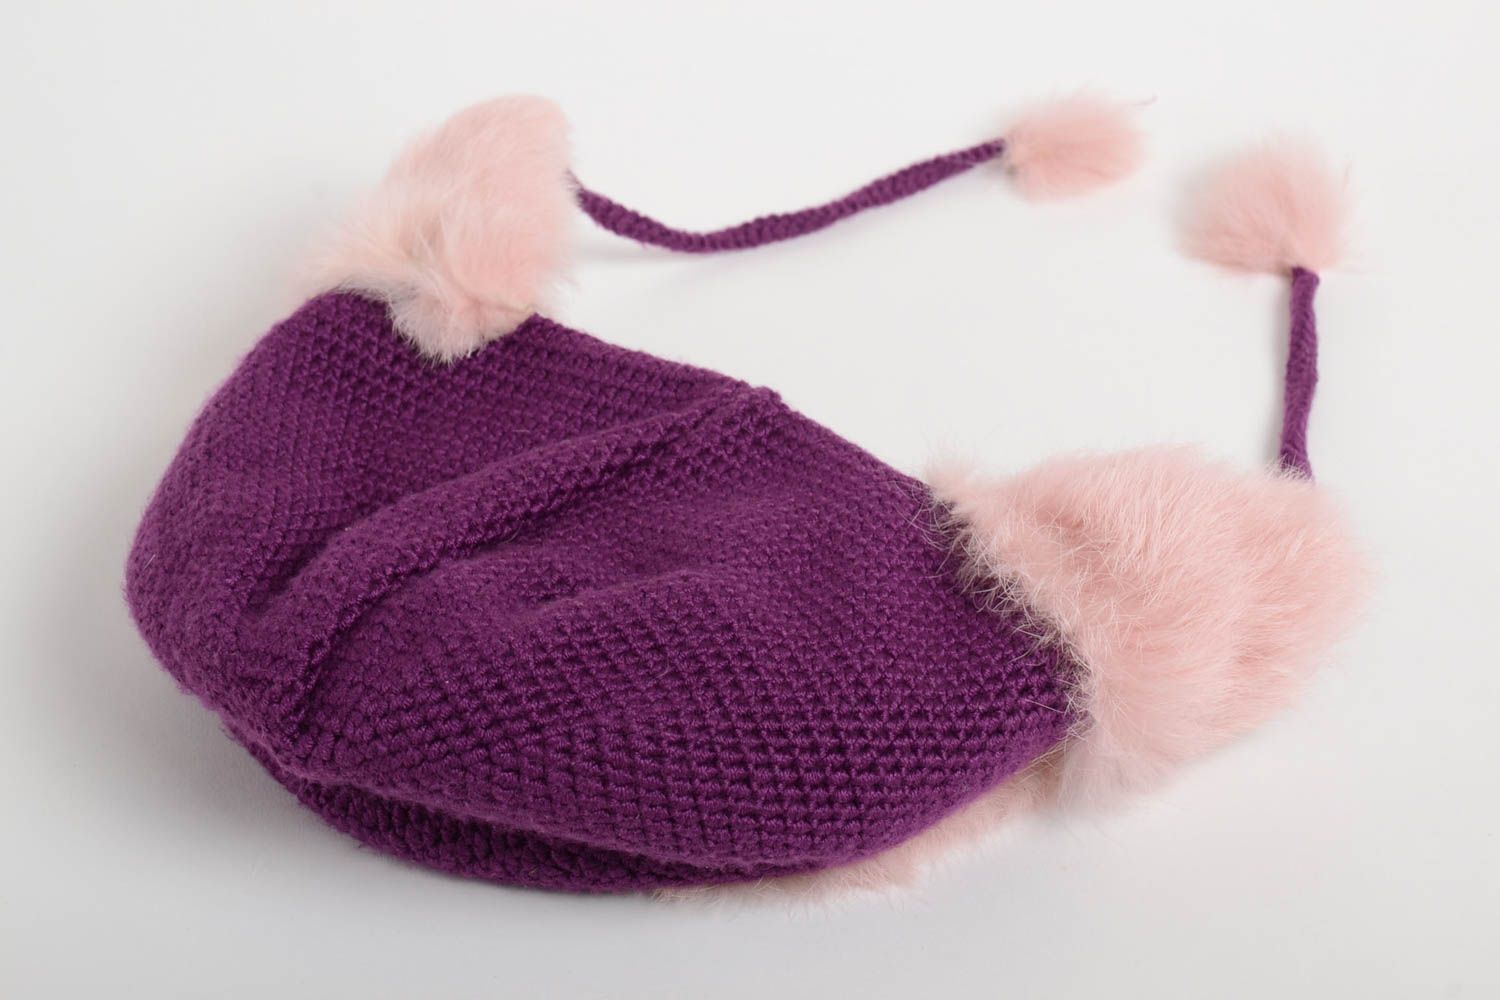 Handmade earflap hat warm earflap hat crochet hat unusual earflap hat gift ideas photo 3